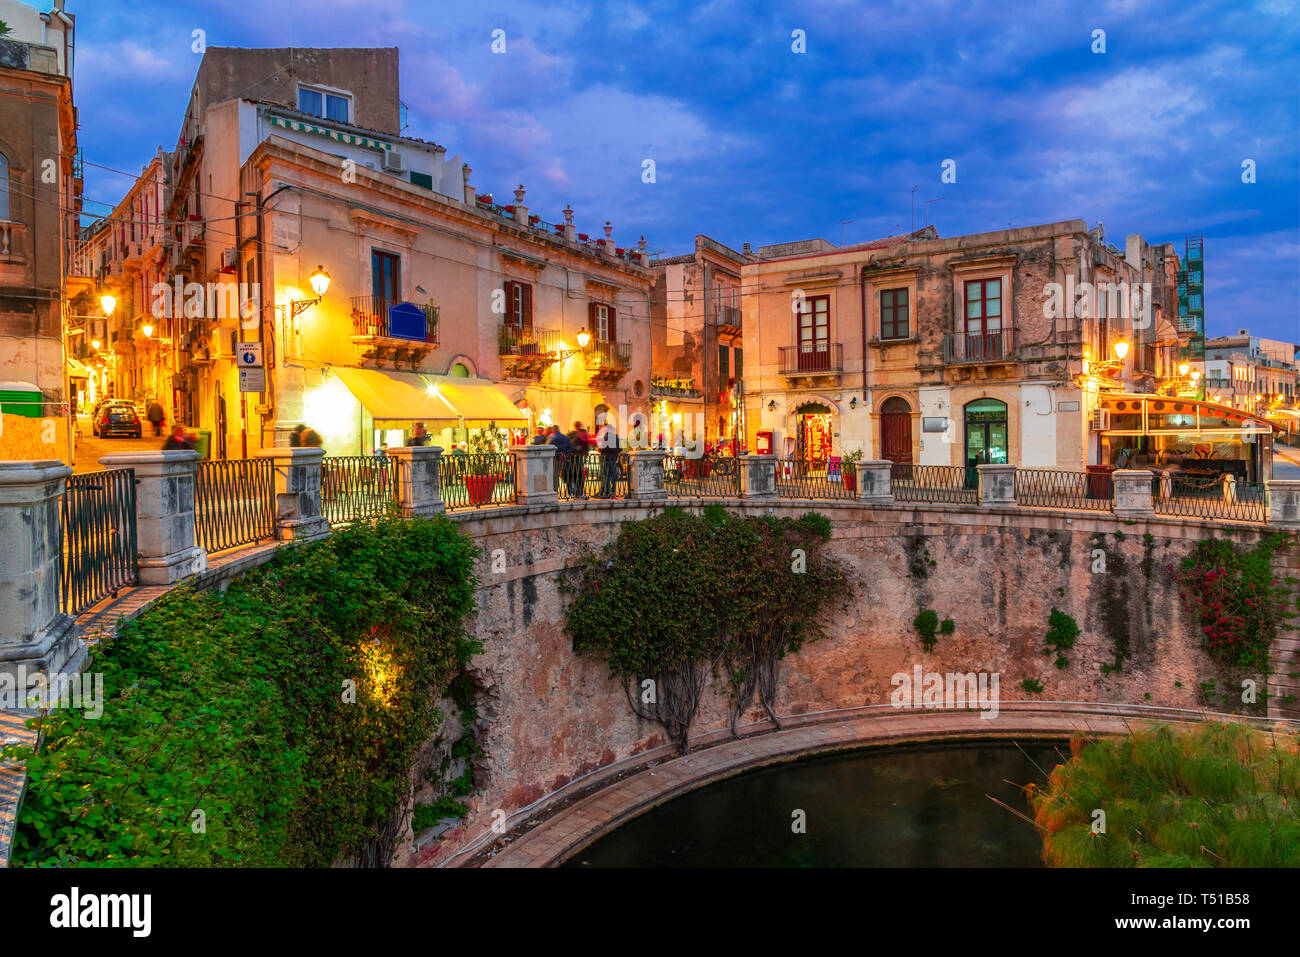 L'île de Syracuse, en Sicile, Italie : vue de la nuit de la fontaine d'Arethusa, Ortigia, Syracuse, une ville historique de l'île de la Sicile, Italie Banque D'Images